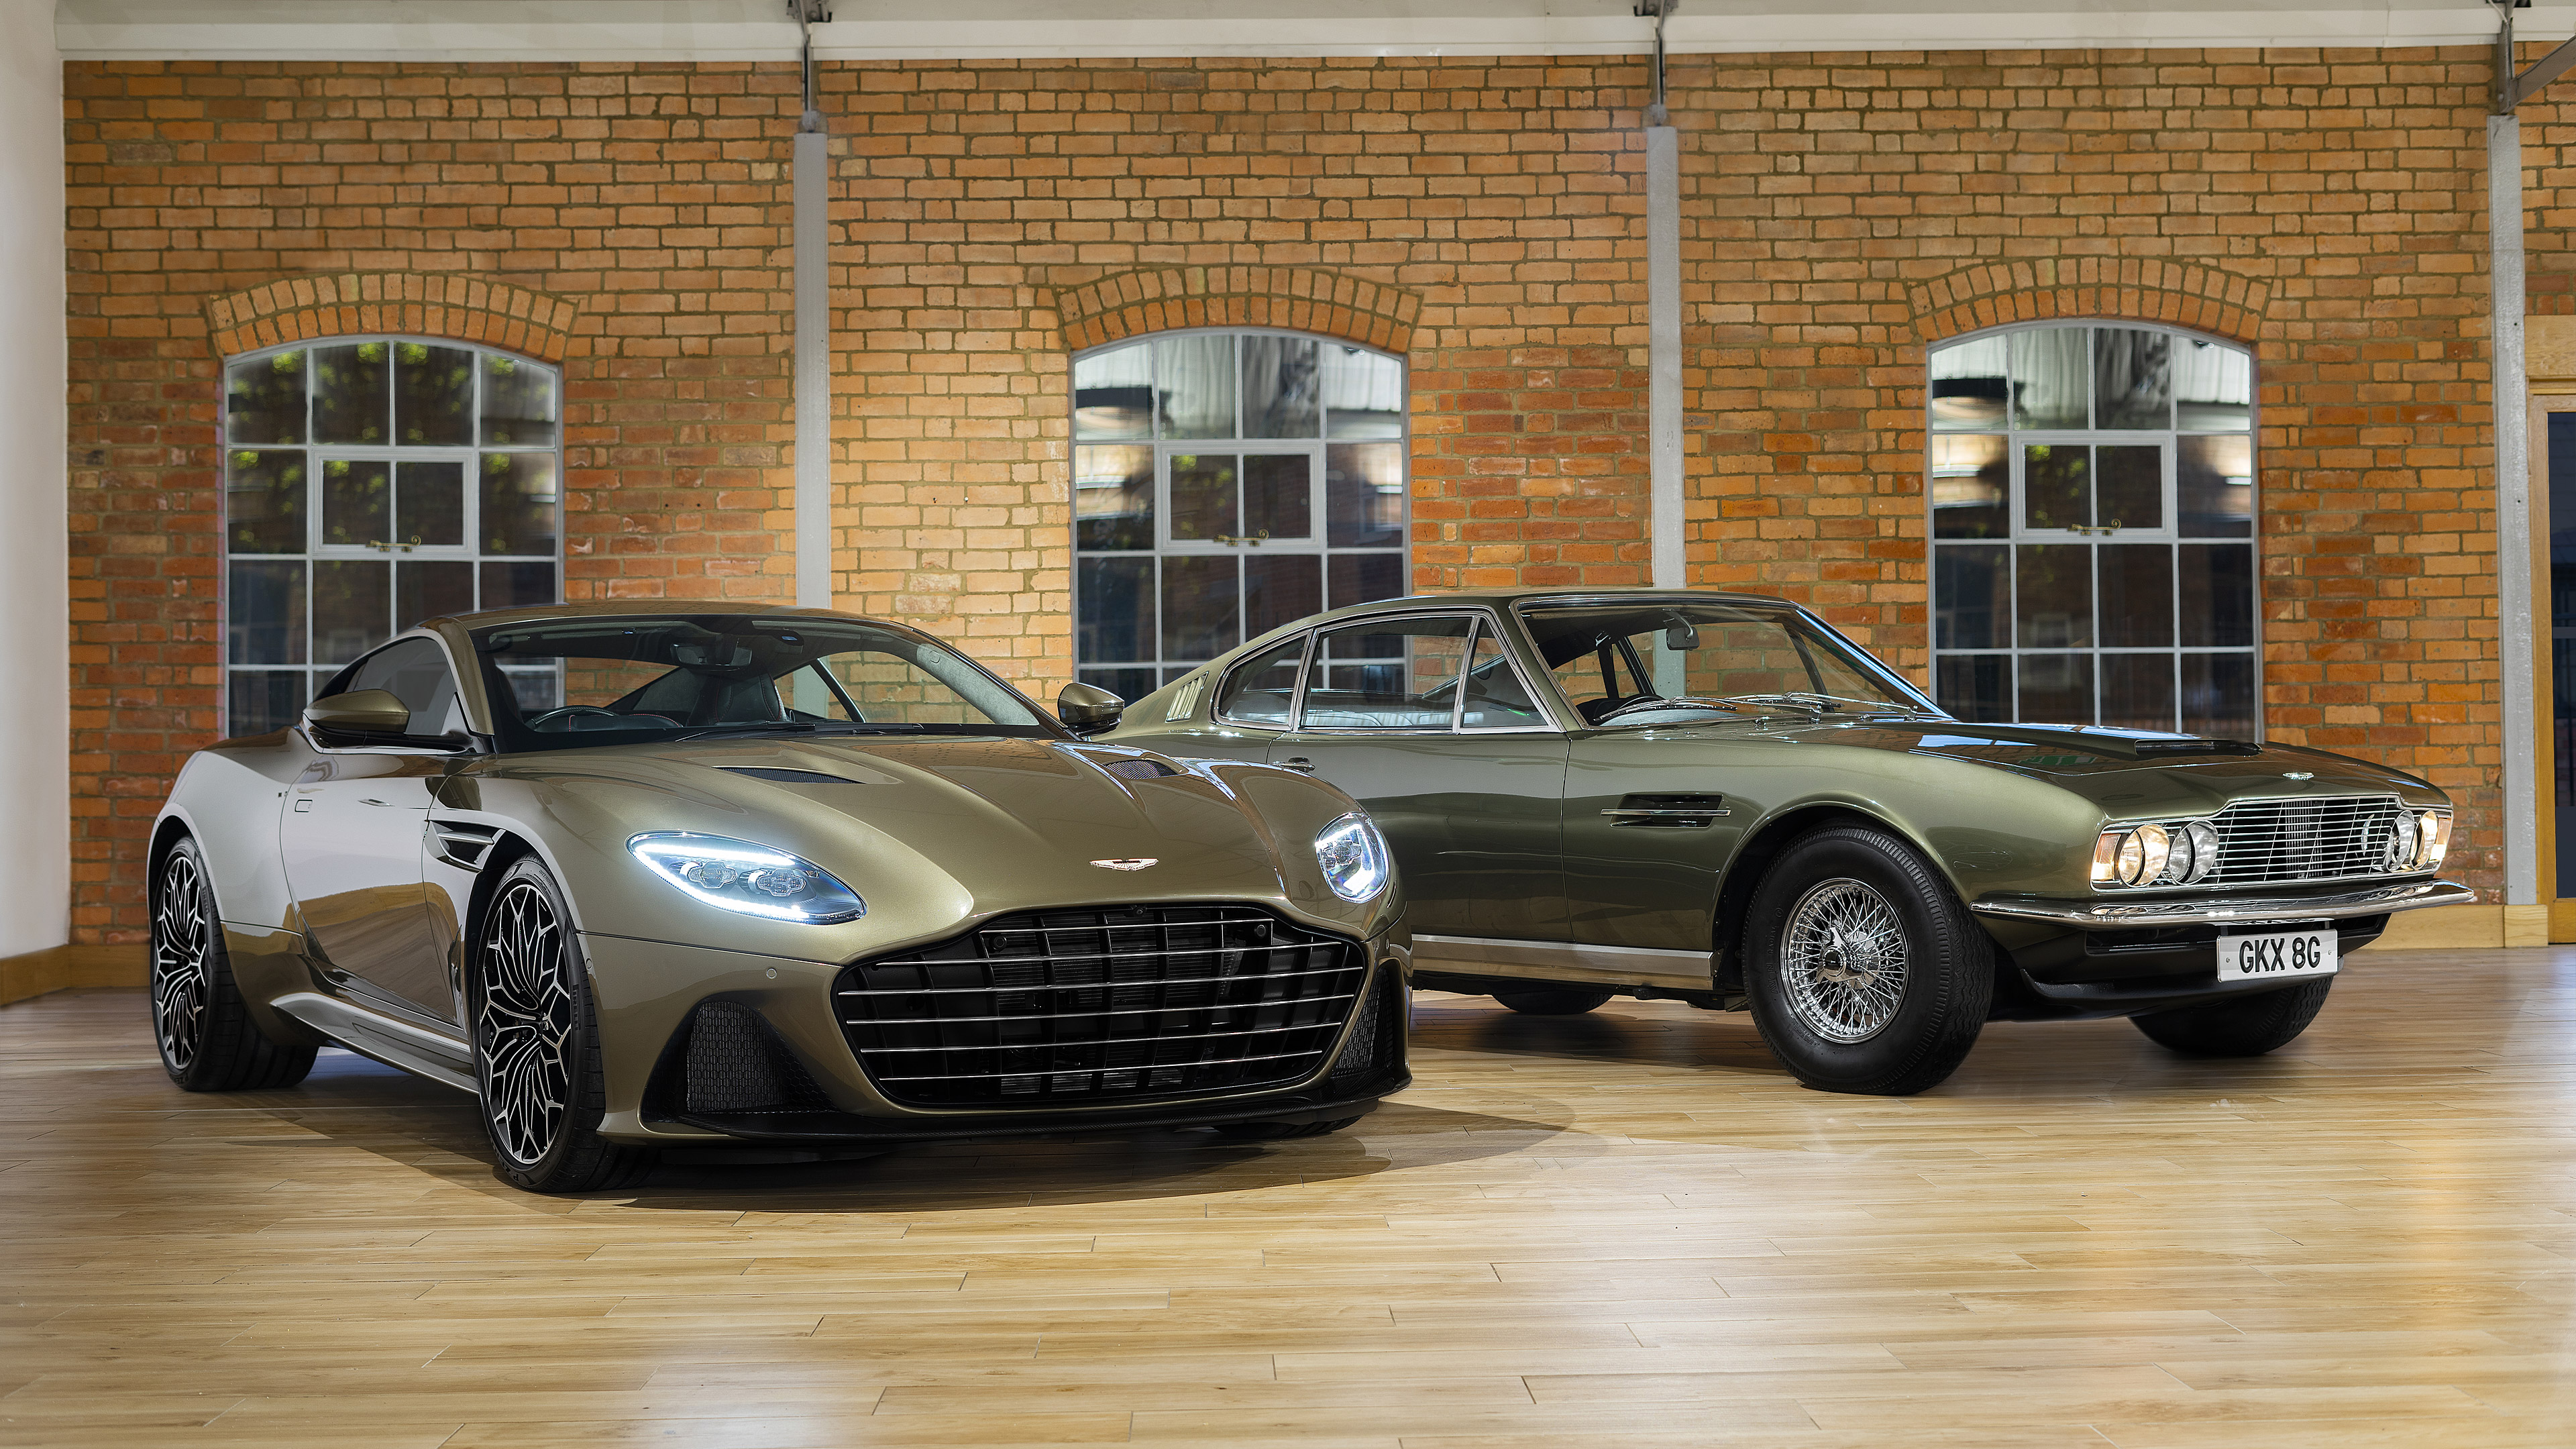 2019 Aston Martin DBS Superleggera OHMSS Edition & 1969 Aston Martin DBS